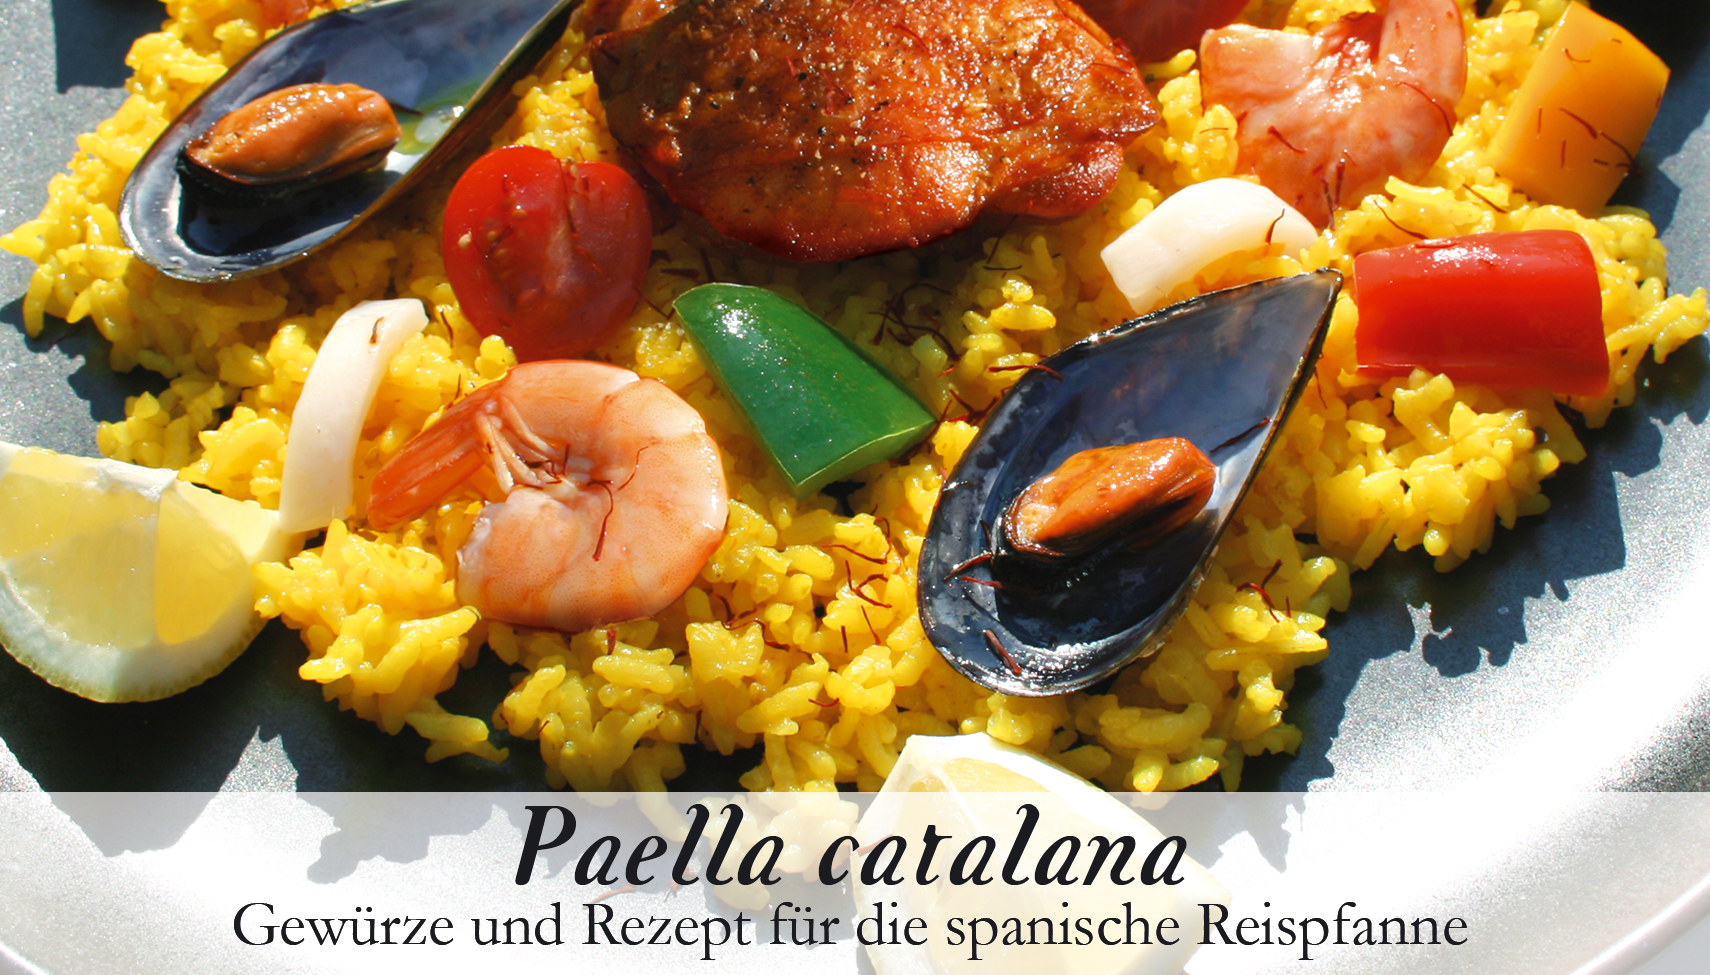 Paella catalana-Gewürzkasten